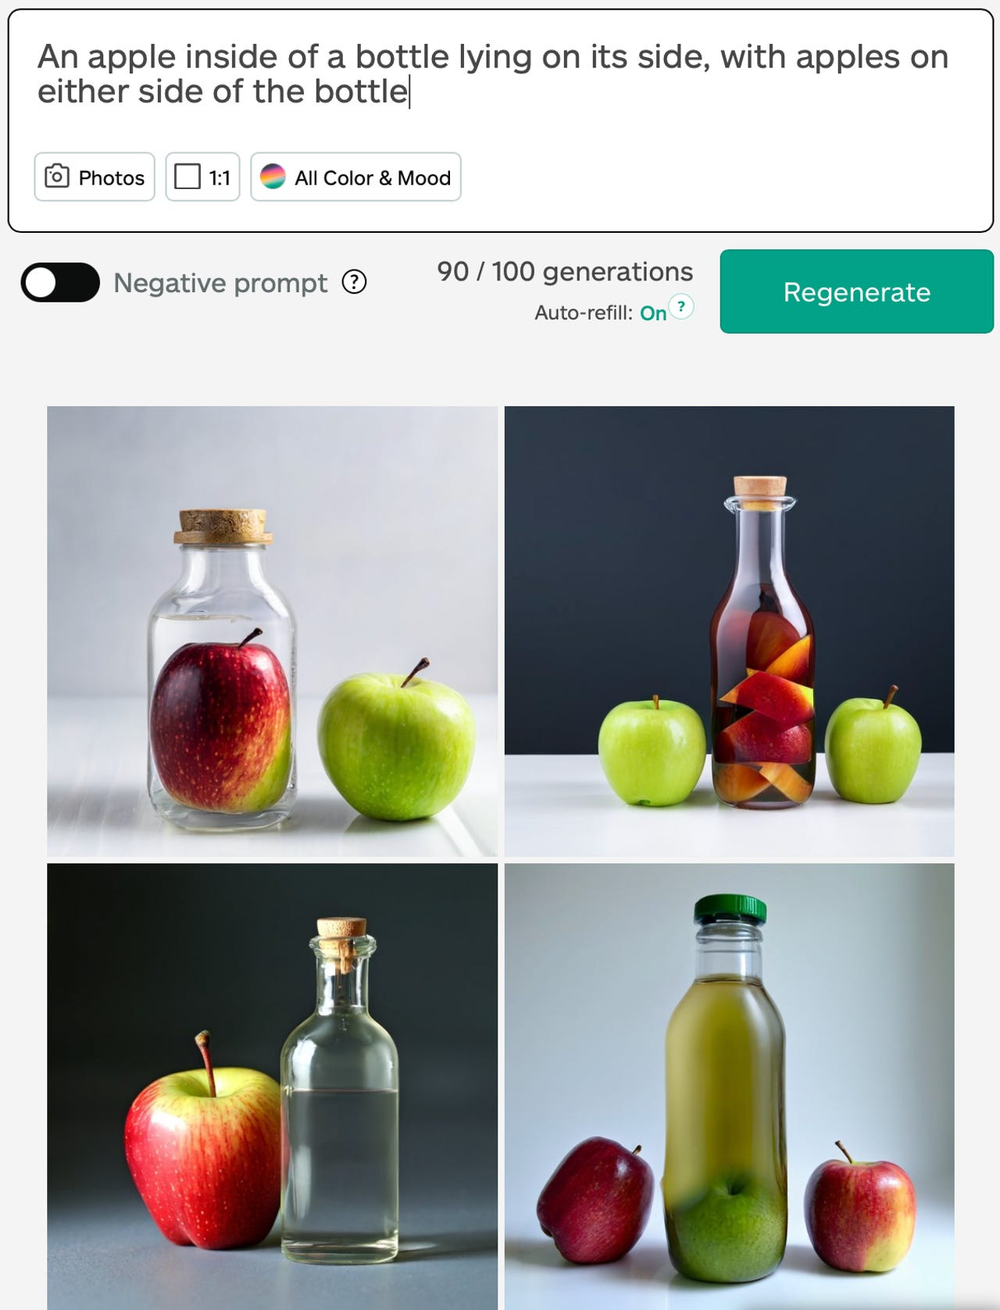 ***
提供：iStock AI生成ツールが生成した瓶とリンゴの画像